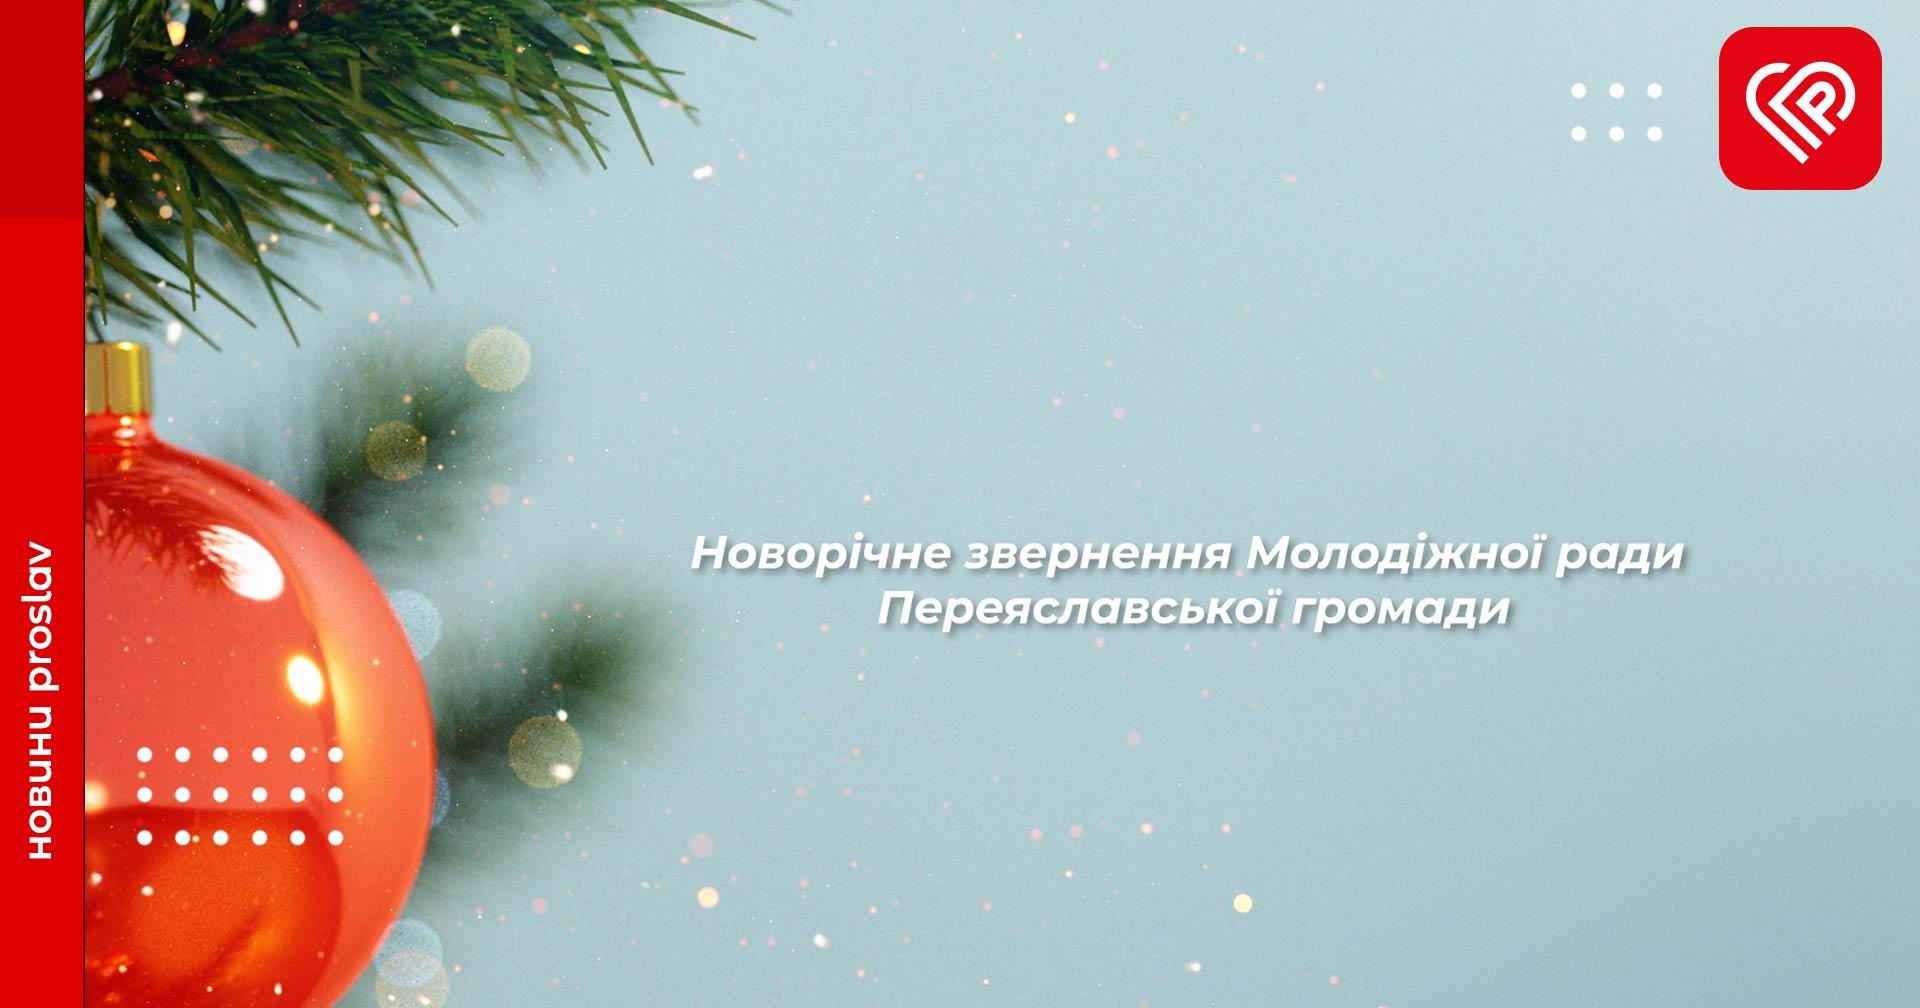 Молодіжна рада Переяславської МТГ від щирого серця вітає всіх українців з Новим роком та різдвяними святами!